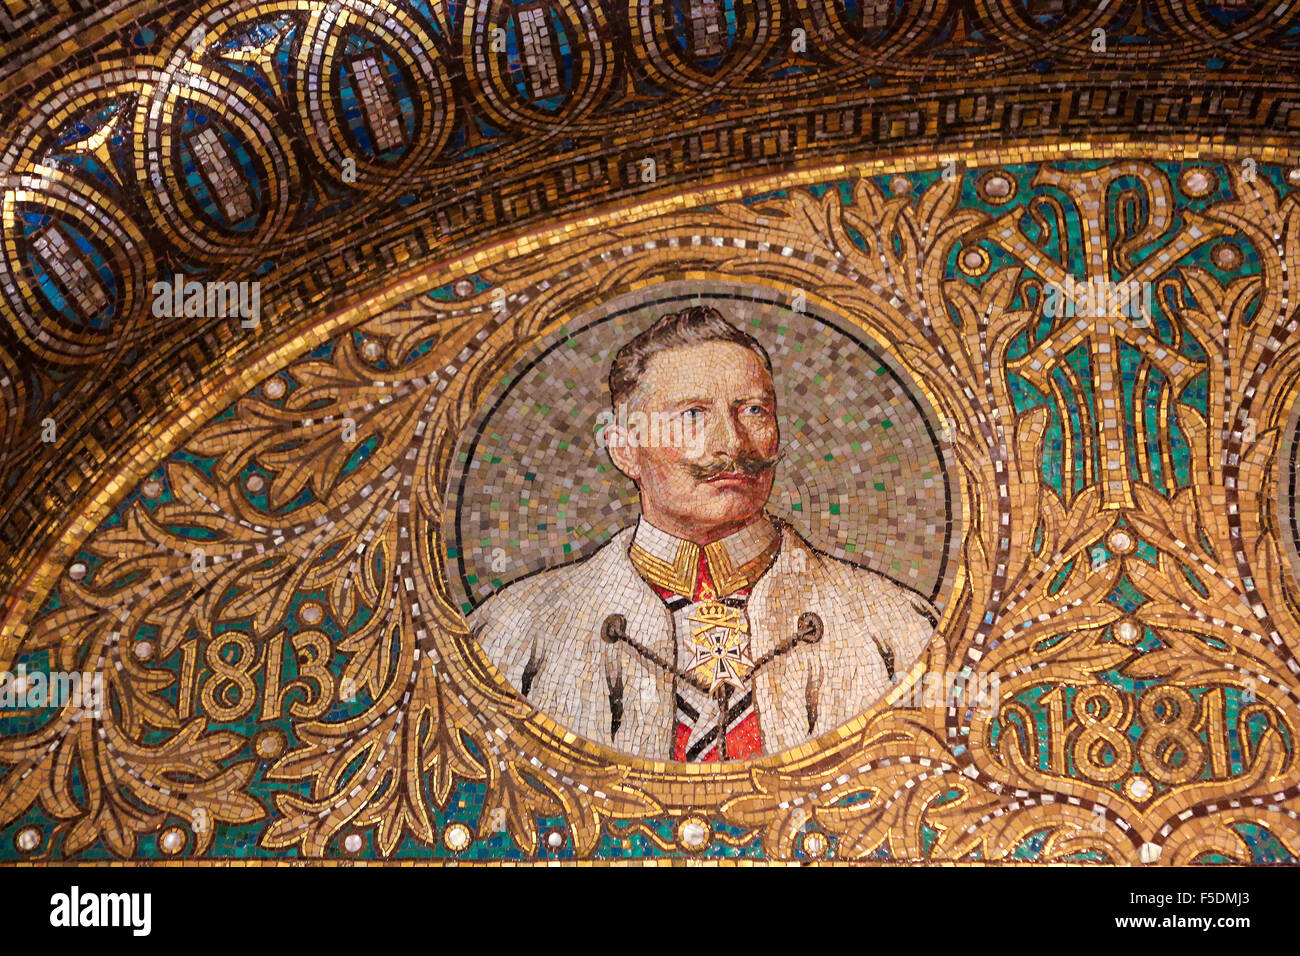 GEROLSTEIN, Deutschland - 10. Oktober 2015: Mosaik von Kaiser Wilhelm II., der letzte deutsche Kaiser und König von Preußen von 1888 bis 19 Stockfoto